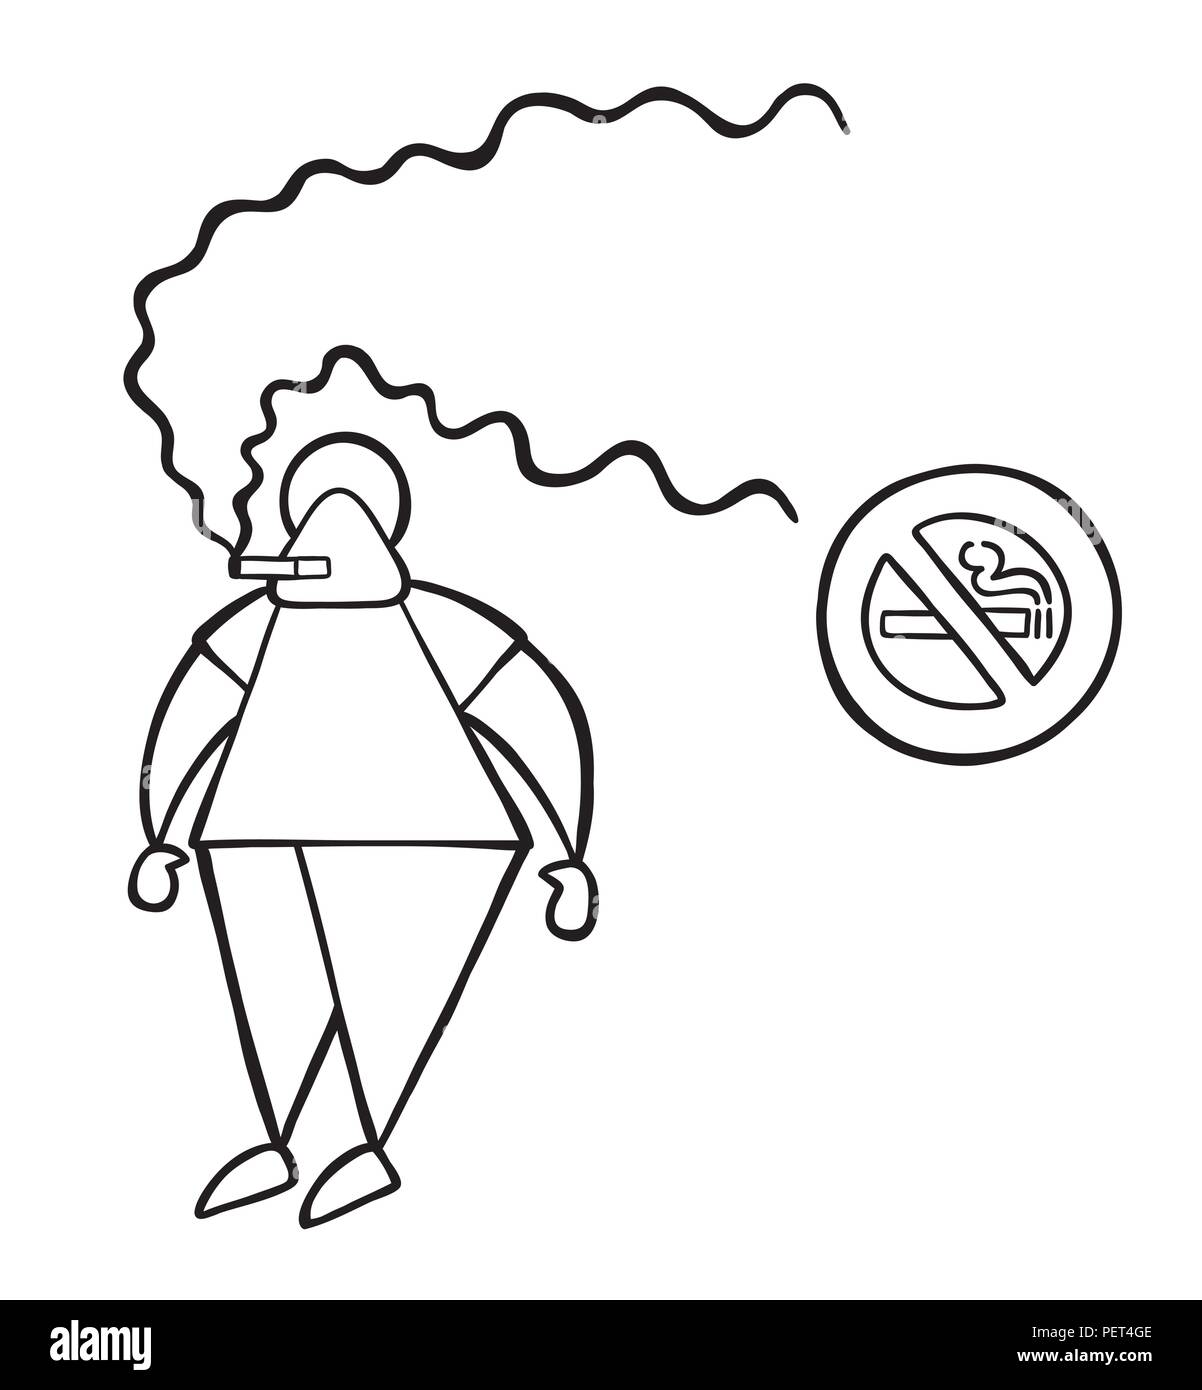 Prohibido fumar imágenes de stock de arte vectorial